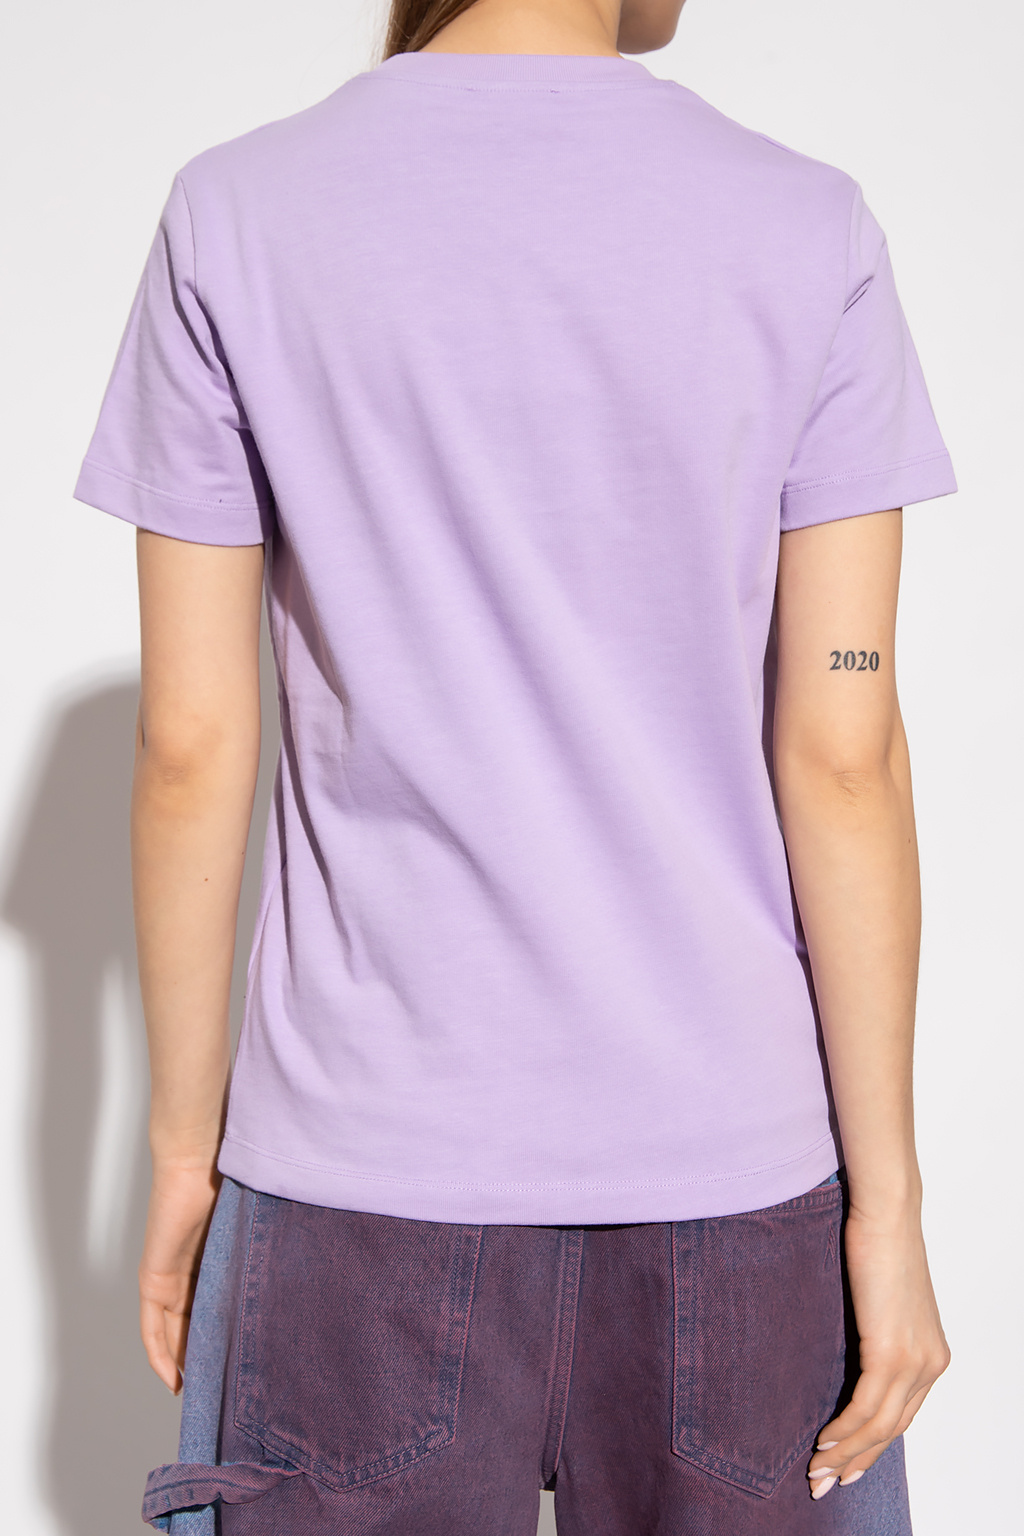 Kenzo Newport Linen T-Shirt